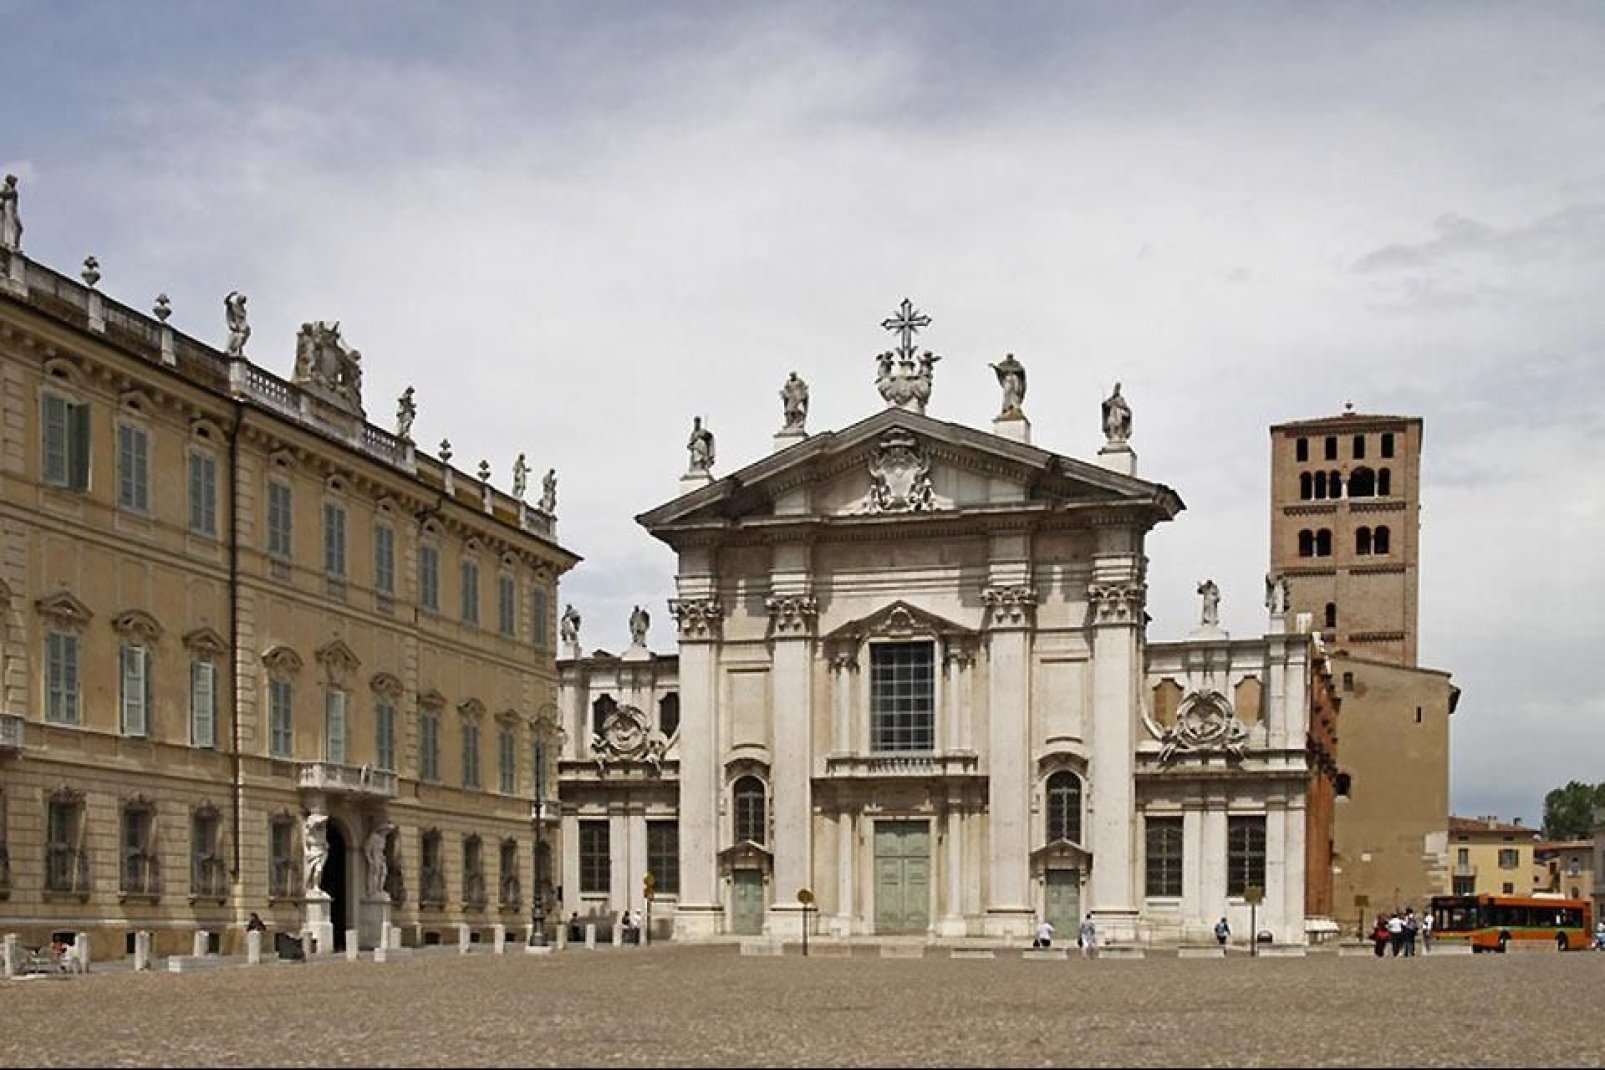 La façade de la Cathédrale Saint-Pierre sur la Piazza Sordello, très évocatrice et ancien centre de la vie politique, mondaine et religieuse de Mantoue